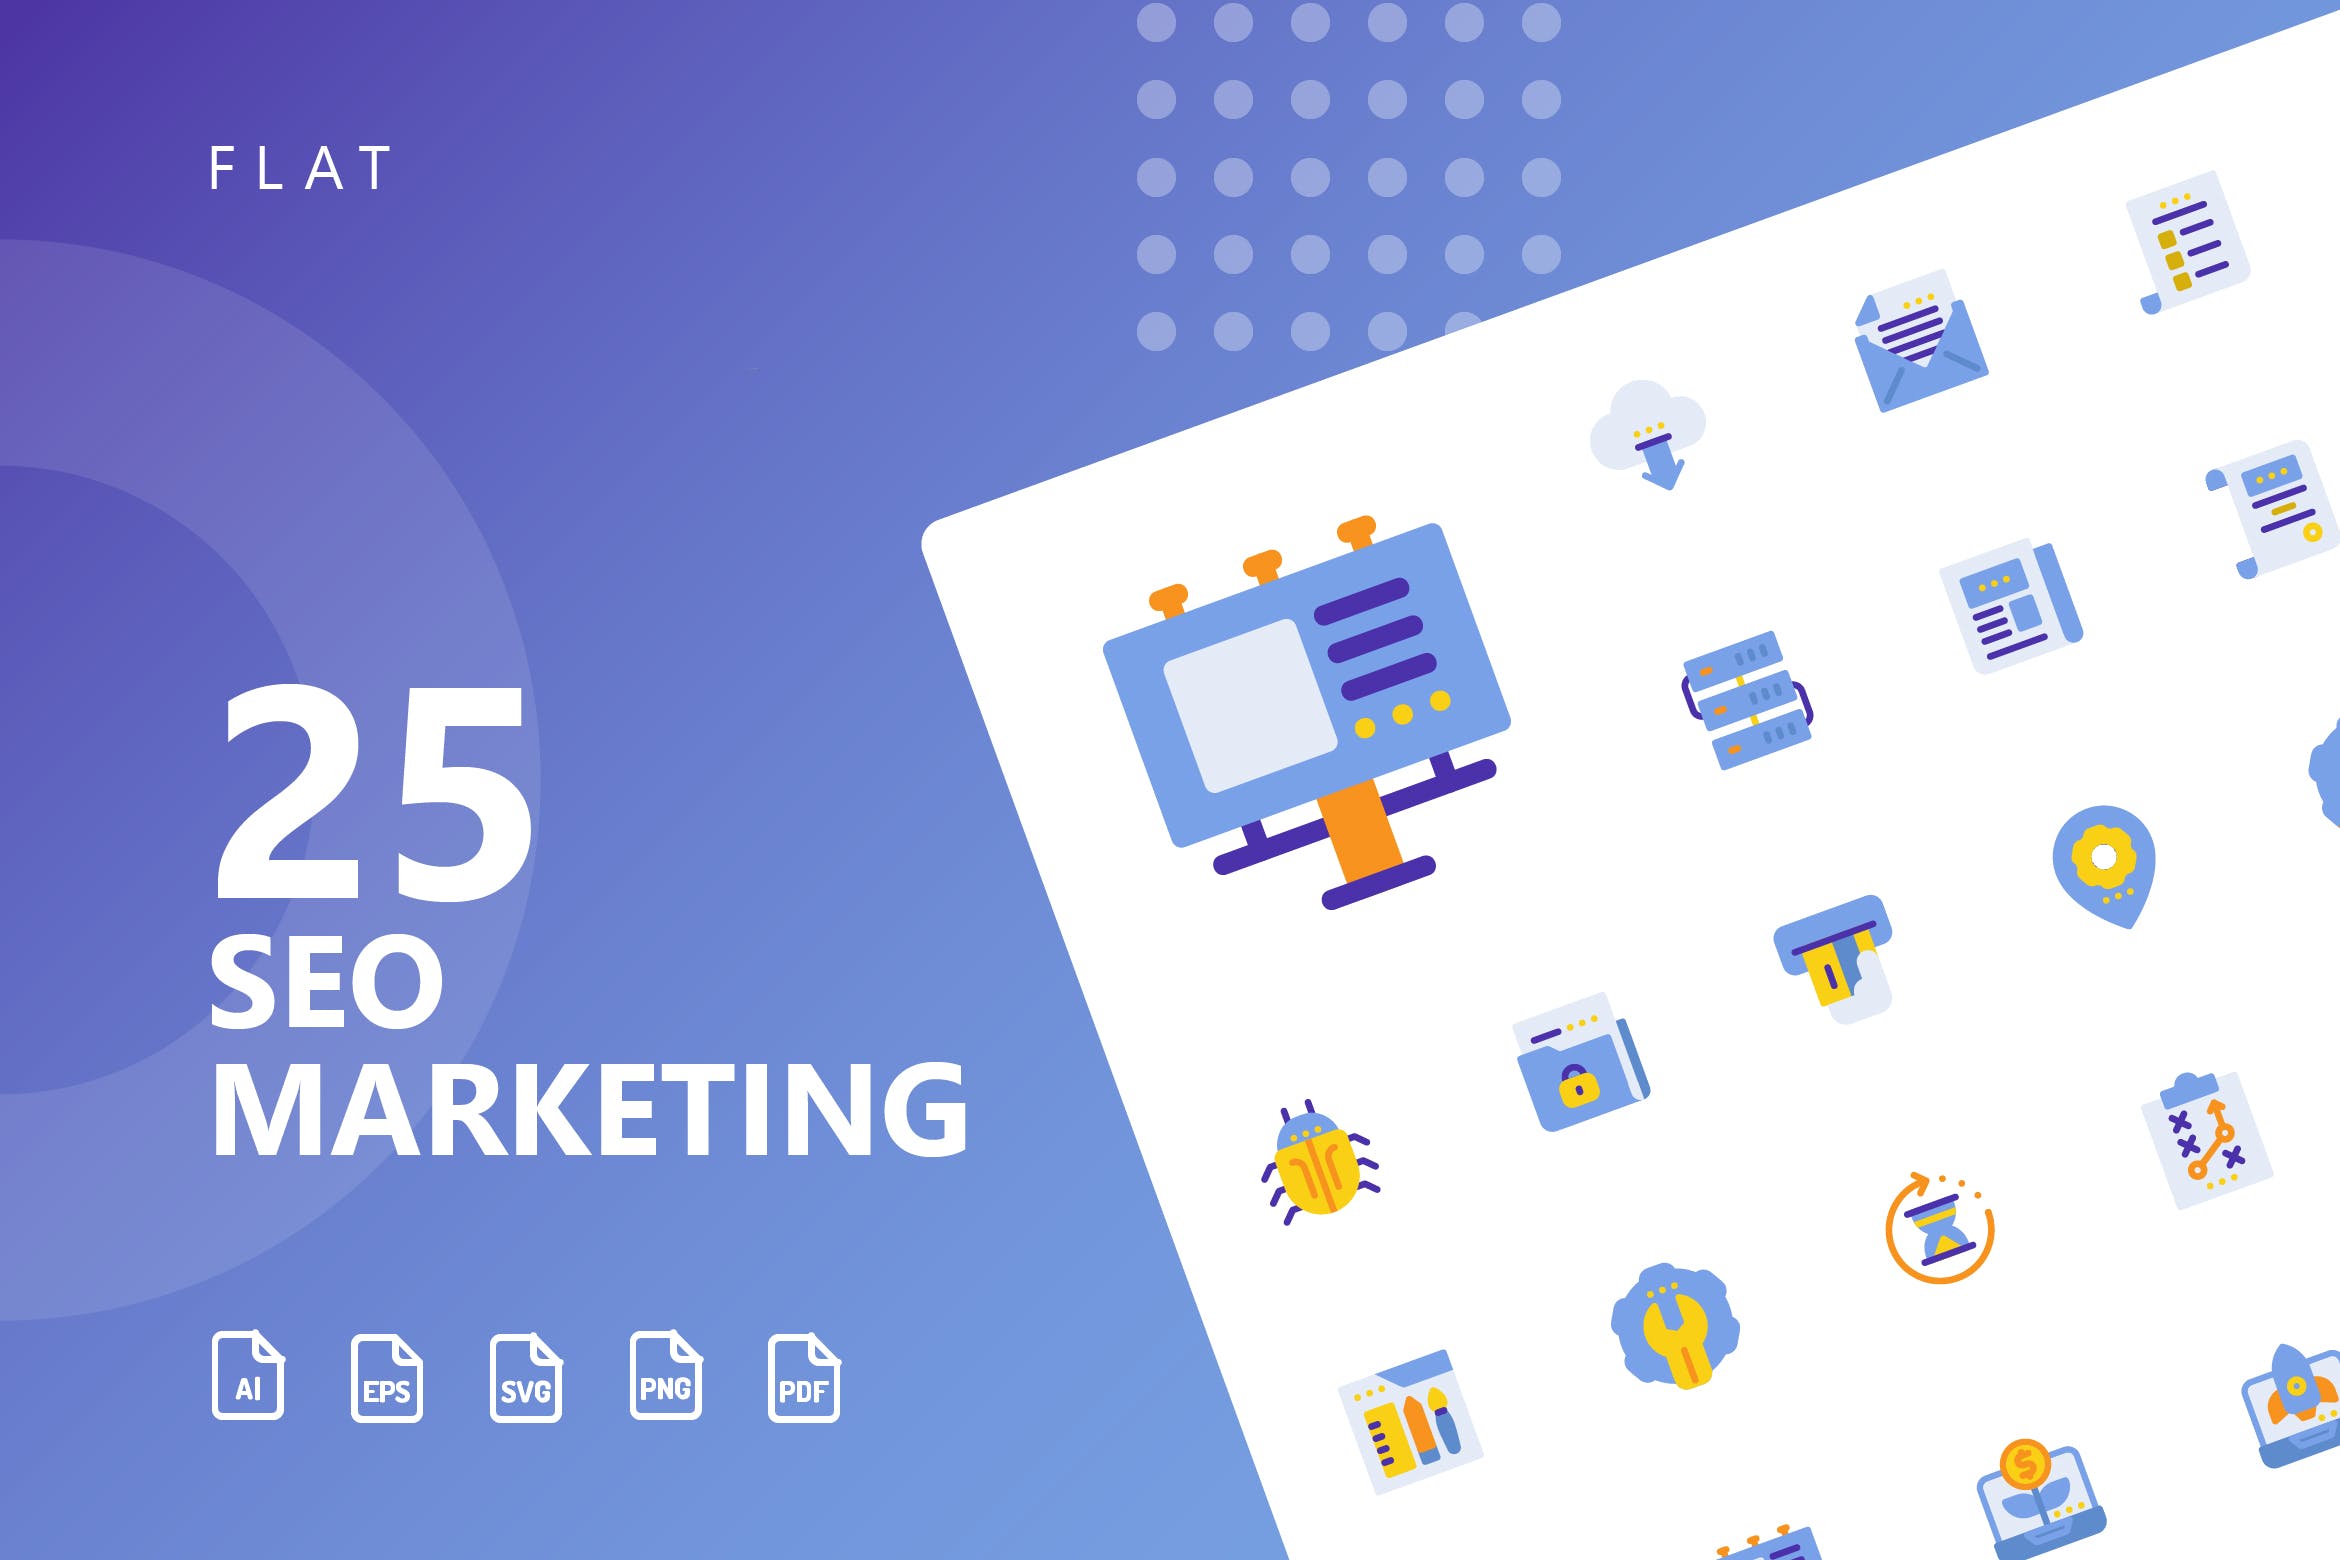 25枚SEO搜索引擎优化营销扁平化矢量16设计素材网精选图标v1 SEO Marketing Flat Icons插图